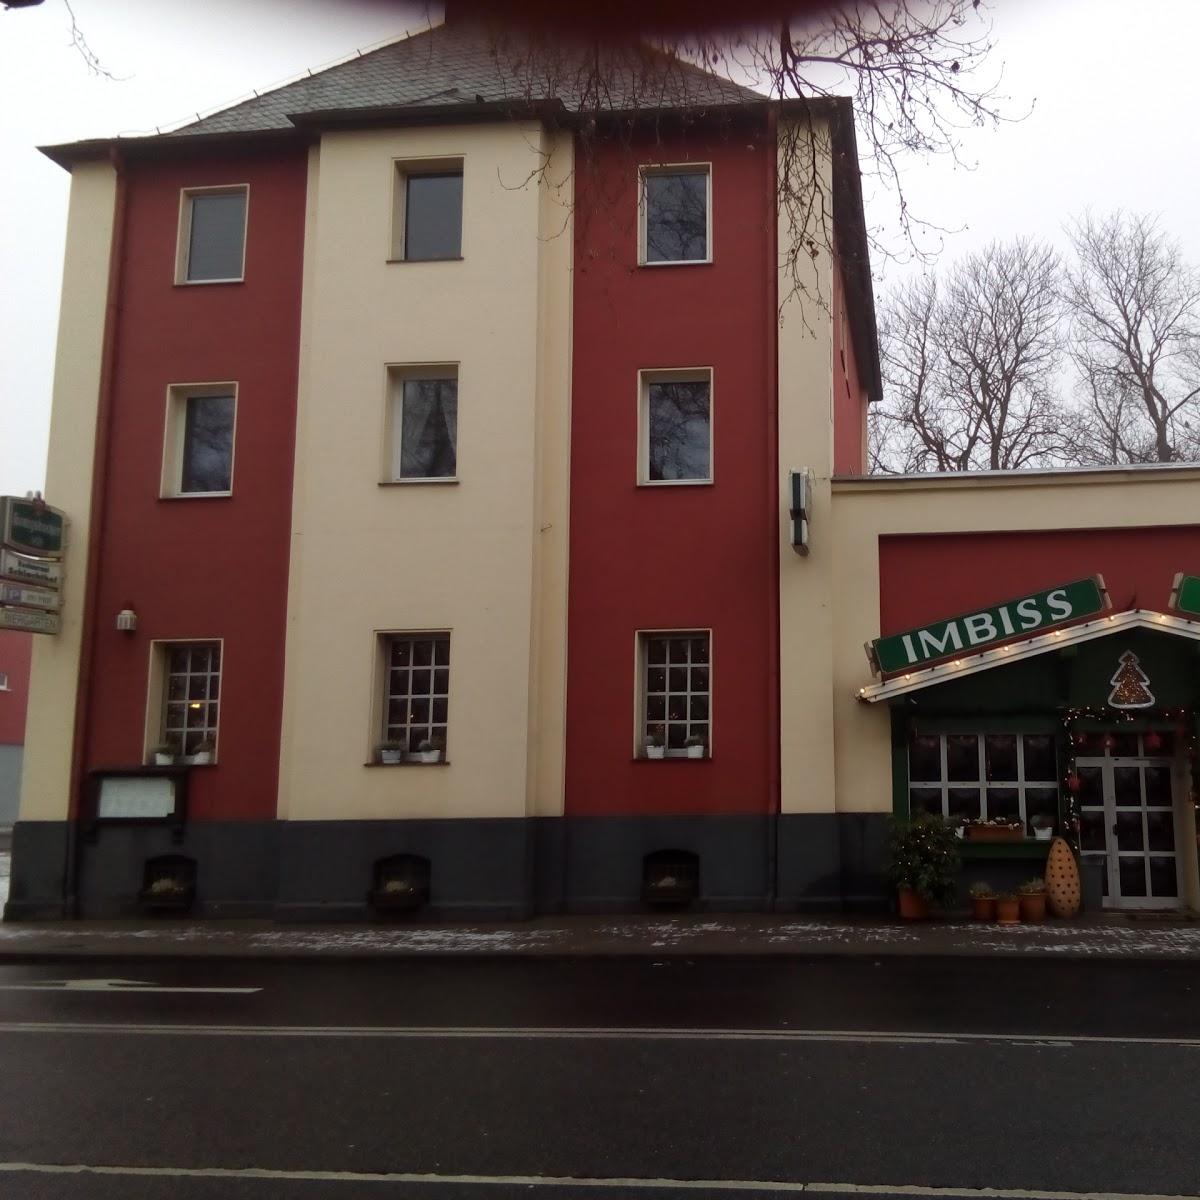 Restaurant "Gasthof Schlachthof" in Koblenz